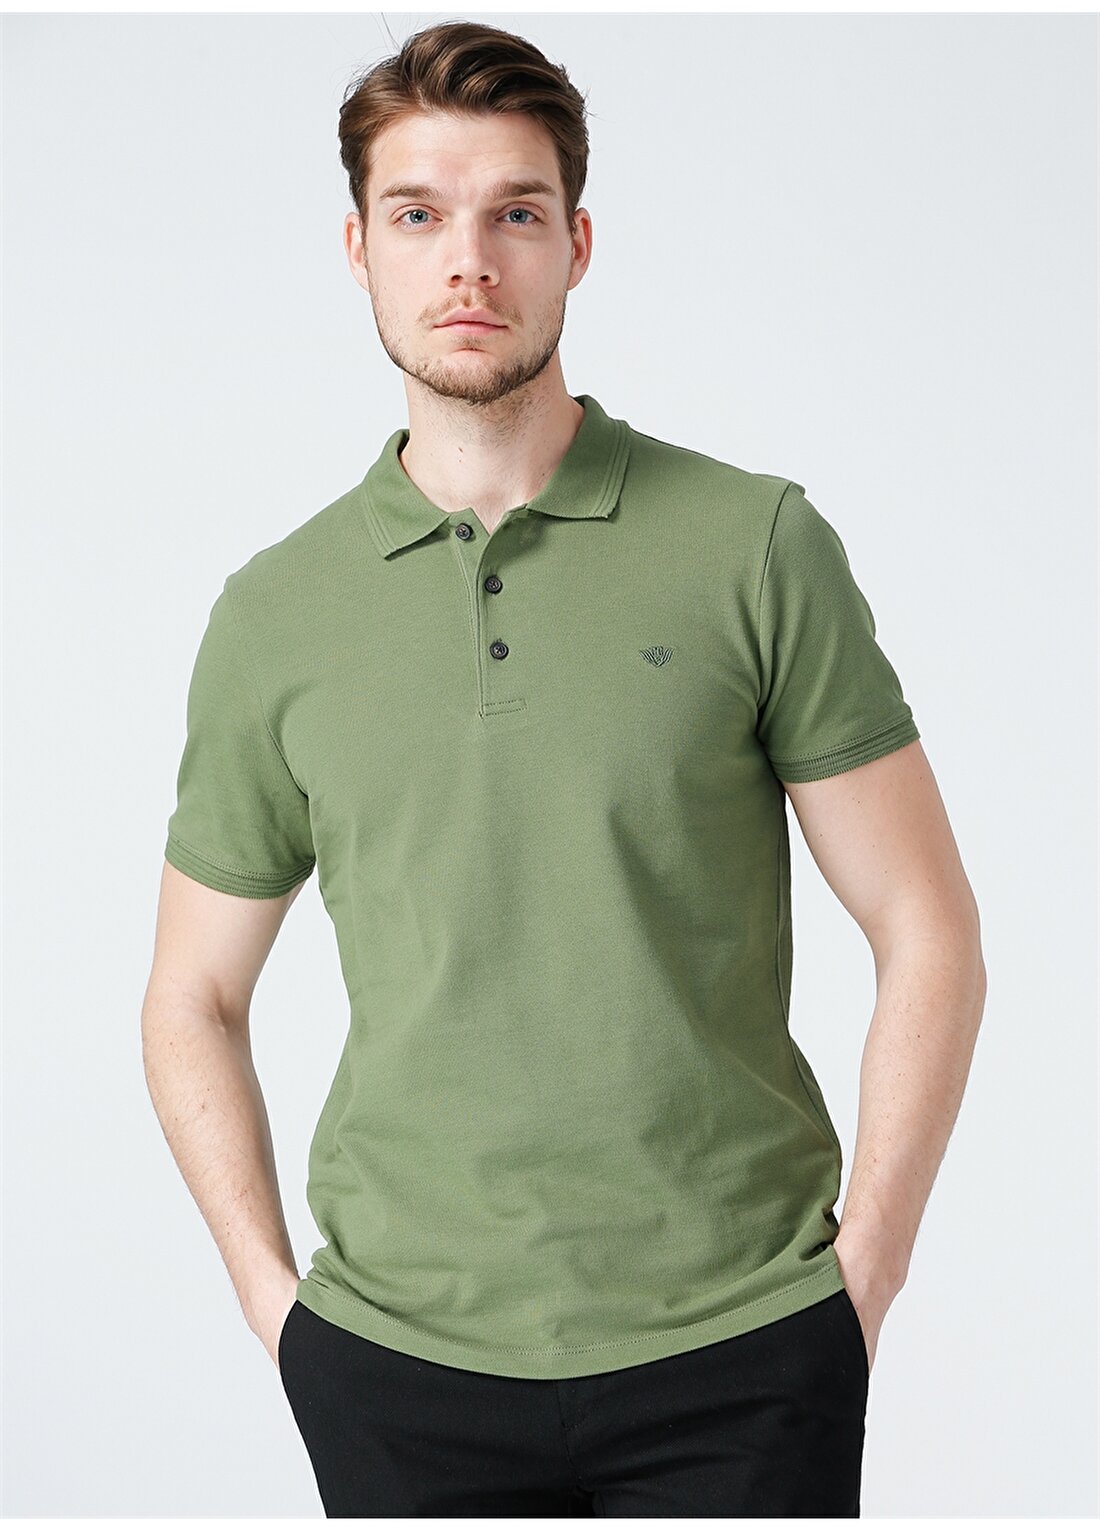 Beymen Business 4B4821200001 Düz Slim Fit Polo Yaka Koyu Yeşil Düğmeli Erkek T-Shirt